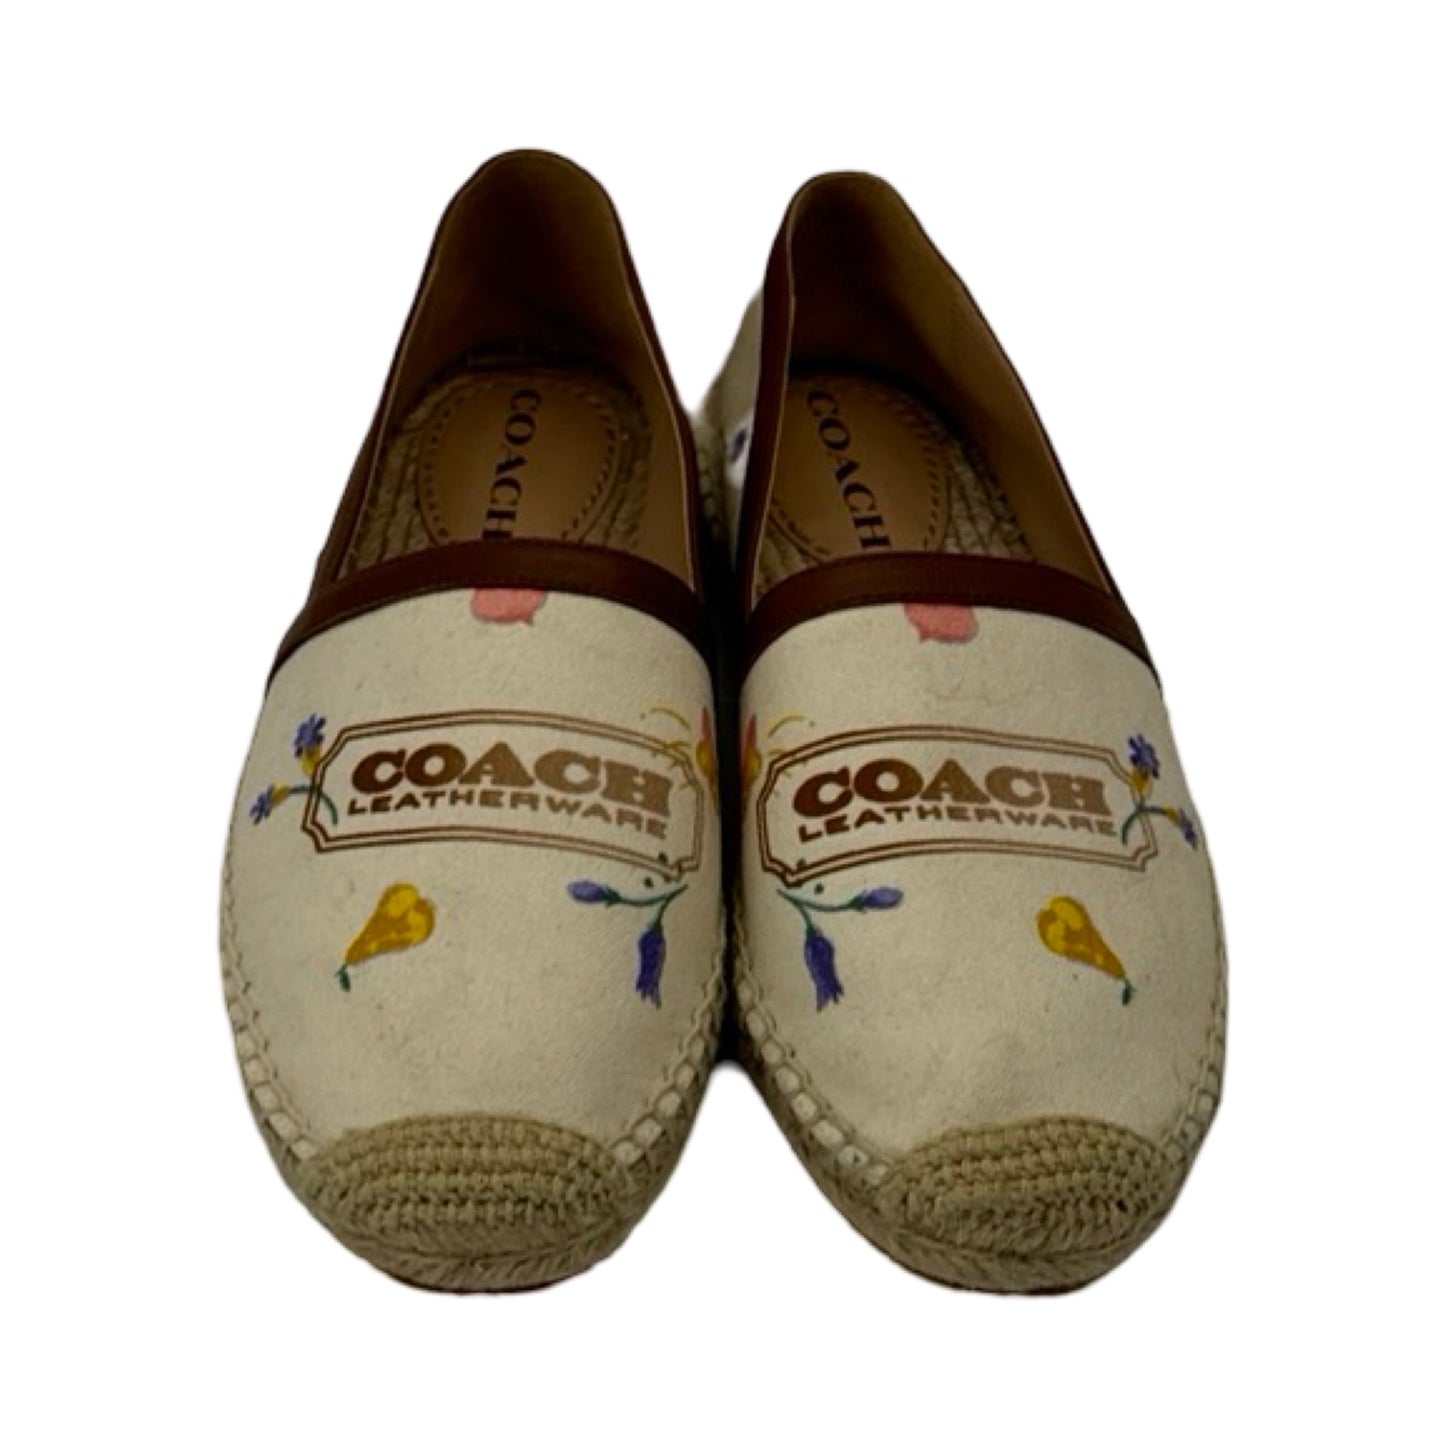 Cream Shoes Flats Coach, Size 7